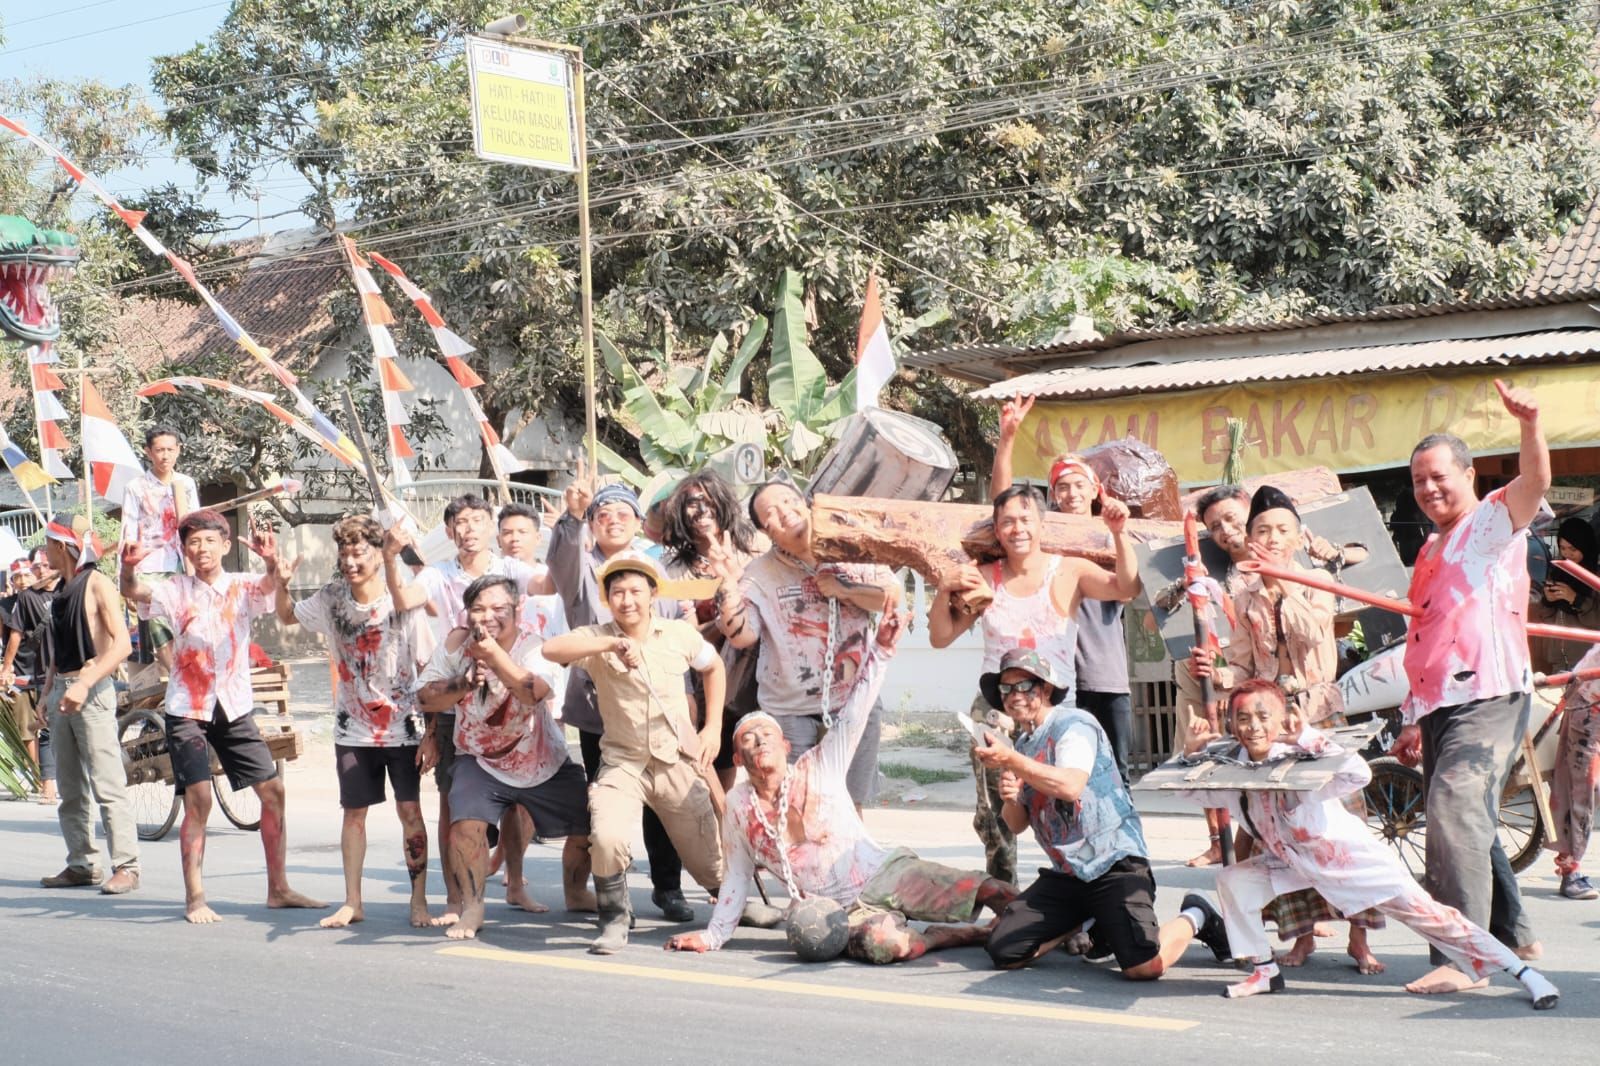 Peserta karnaval Desa Klampok Banjarnegara dari RW 1, peraih juara 2 lomba karnaval tingkat Desa Klampok